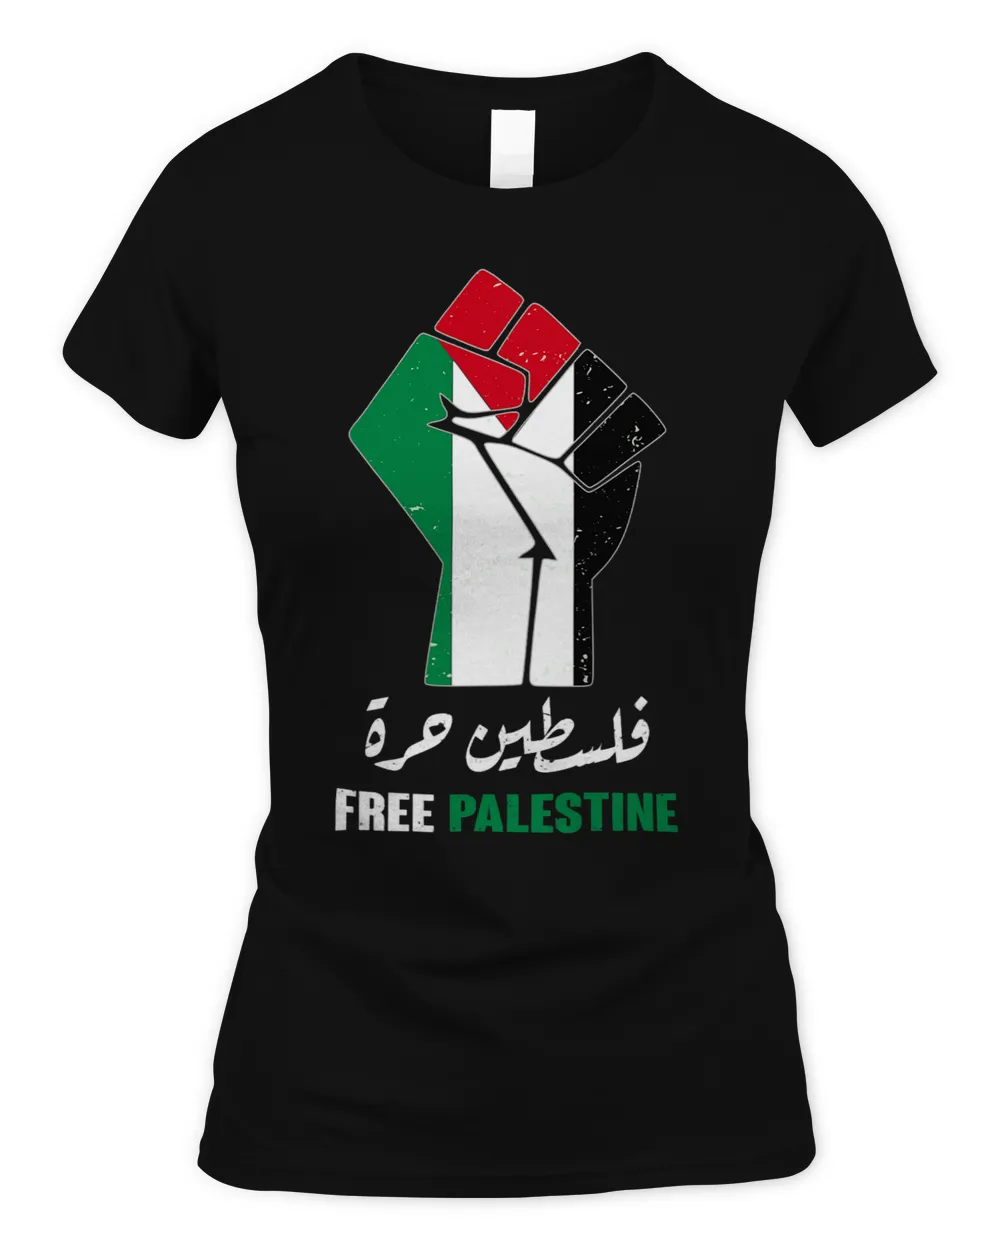 Free Palestine Free Gaza Palestinians lives matter